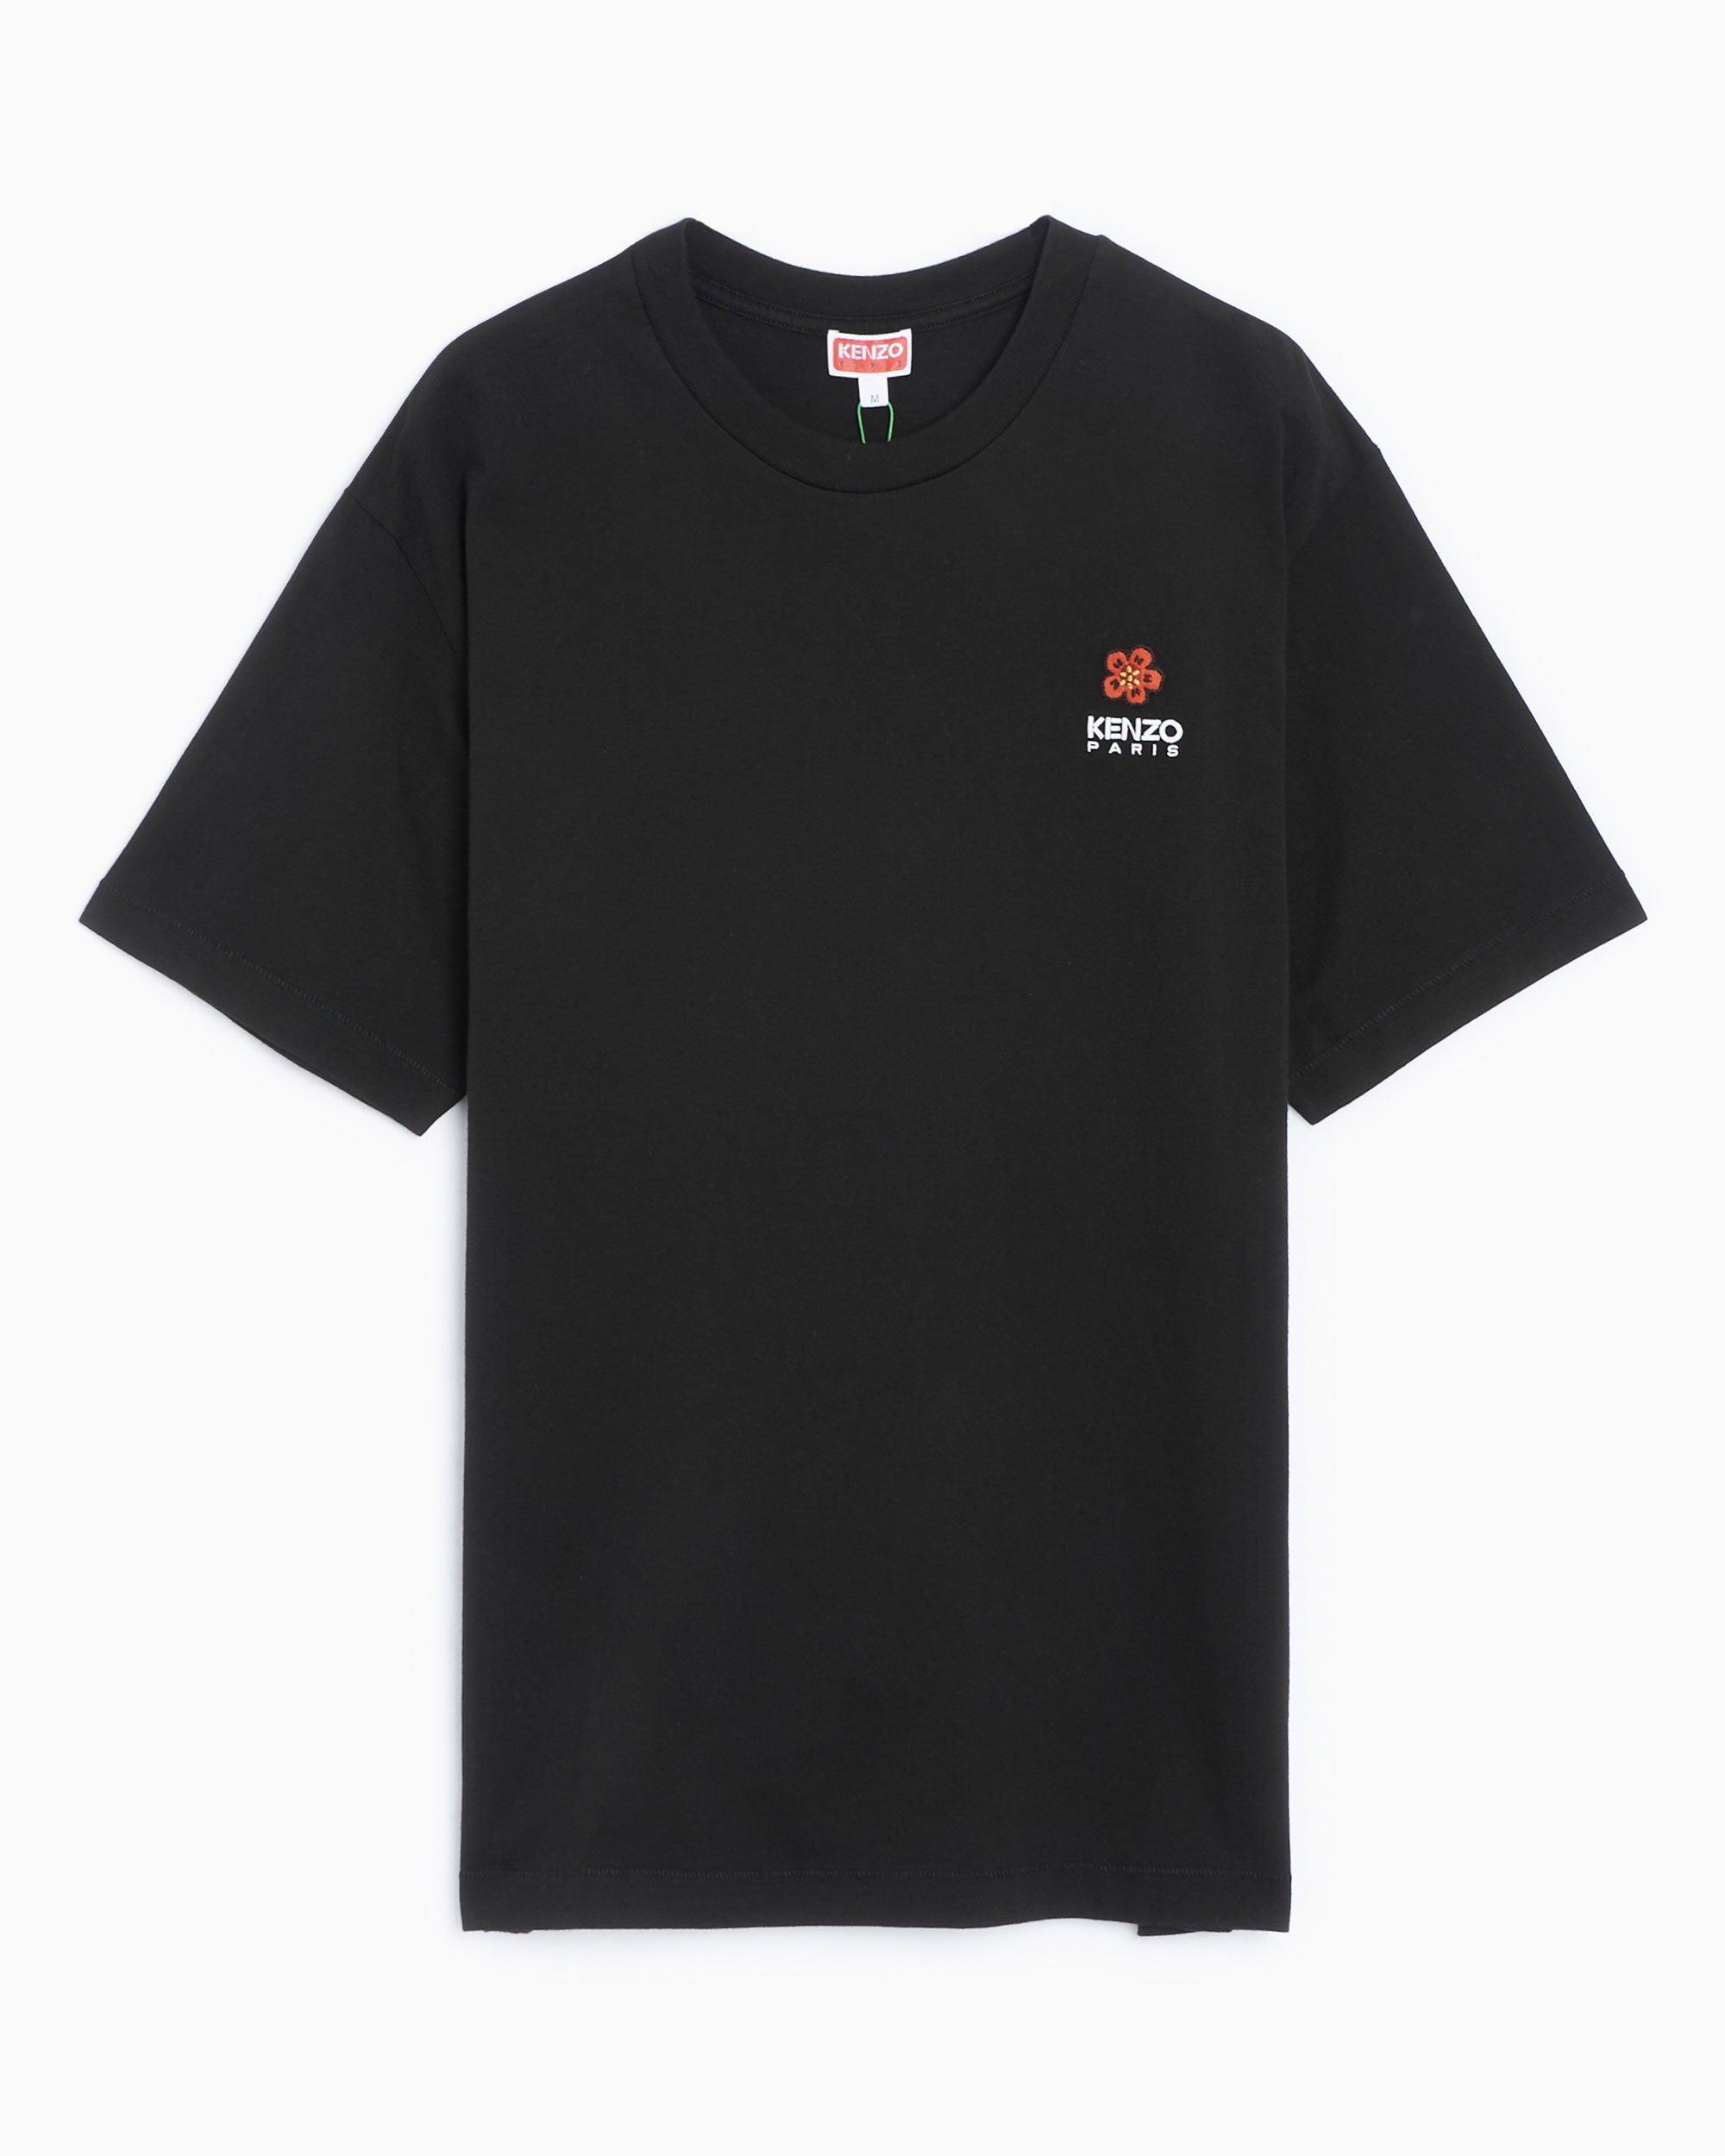 Kenzo BOKE FLOWER Crest Men's T-Shirt Black FC65TS4124SG-99J| Buy